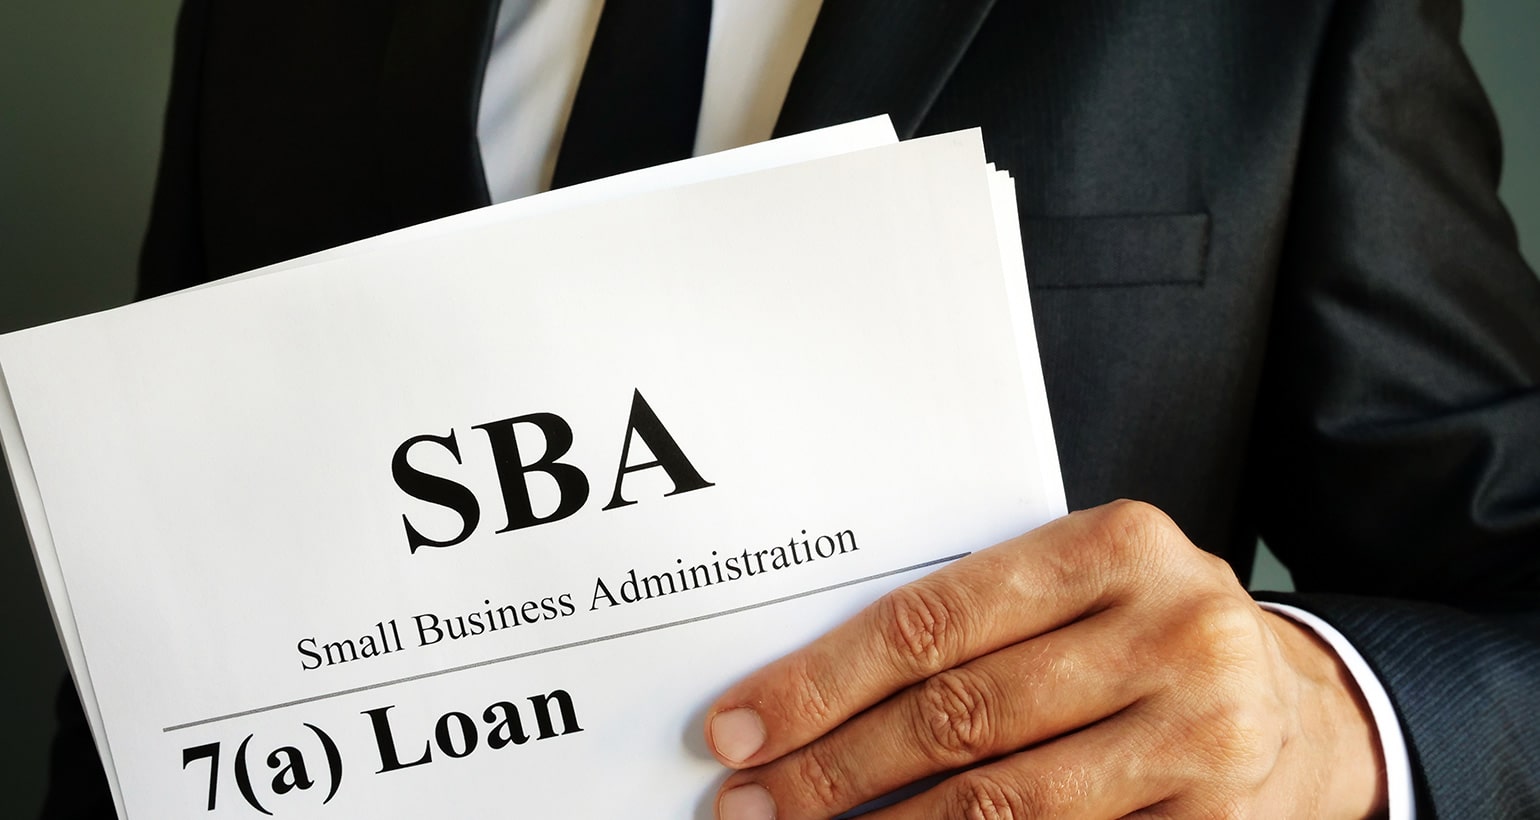 SBA loan form held by a businessman.